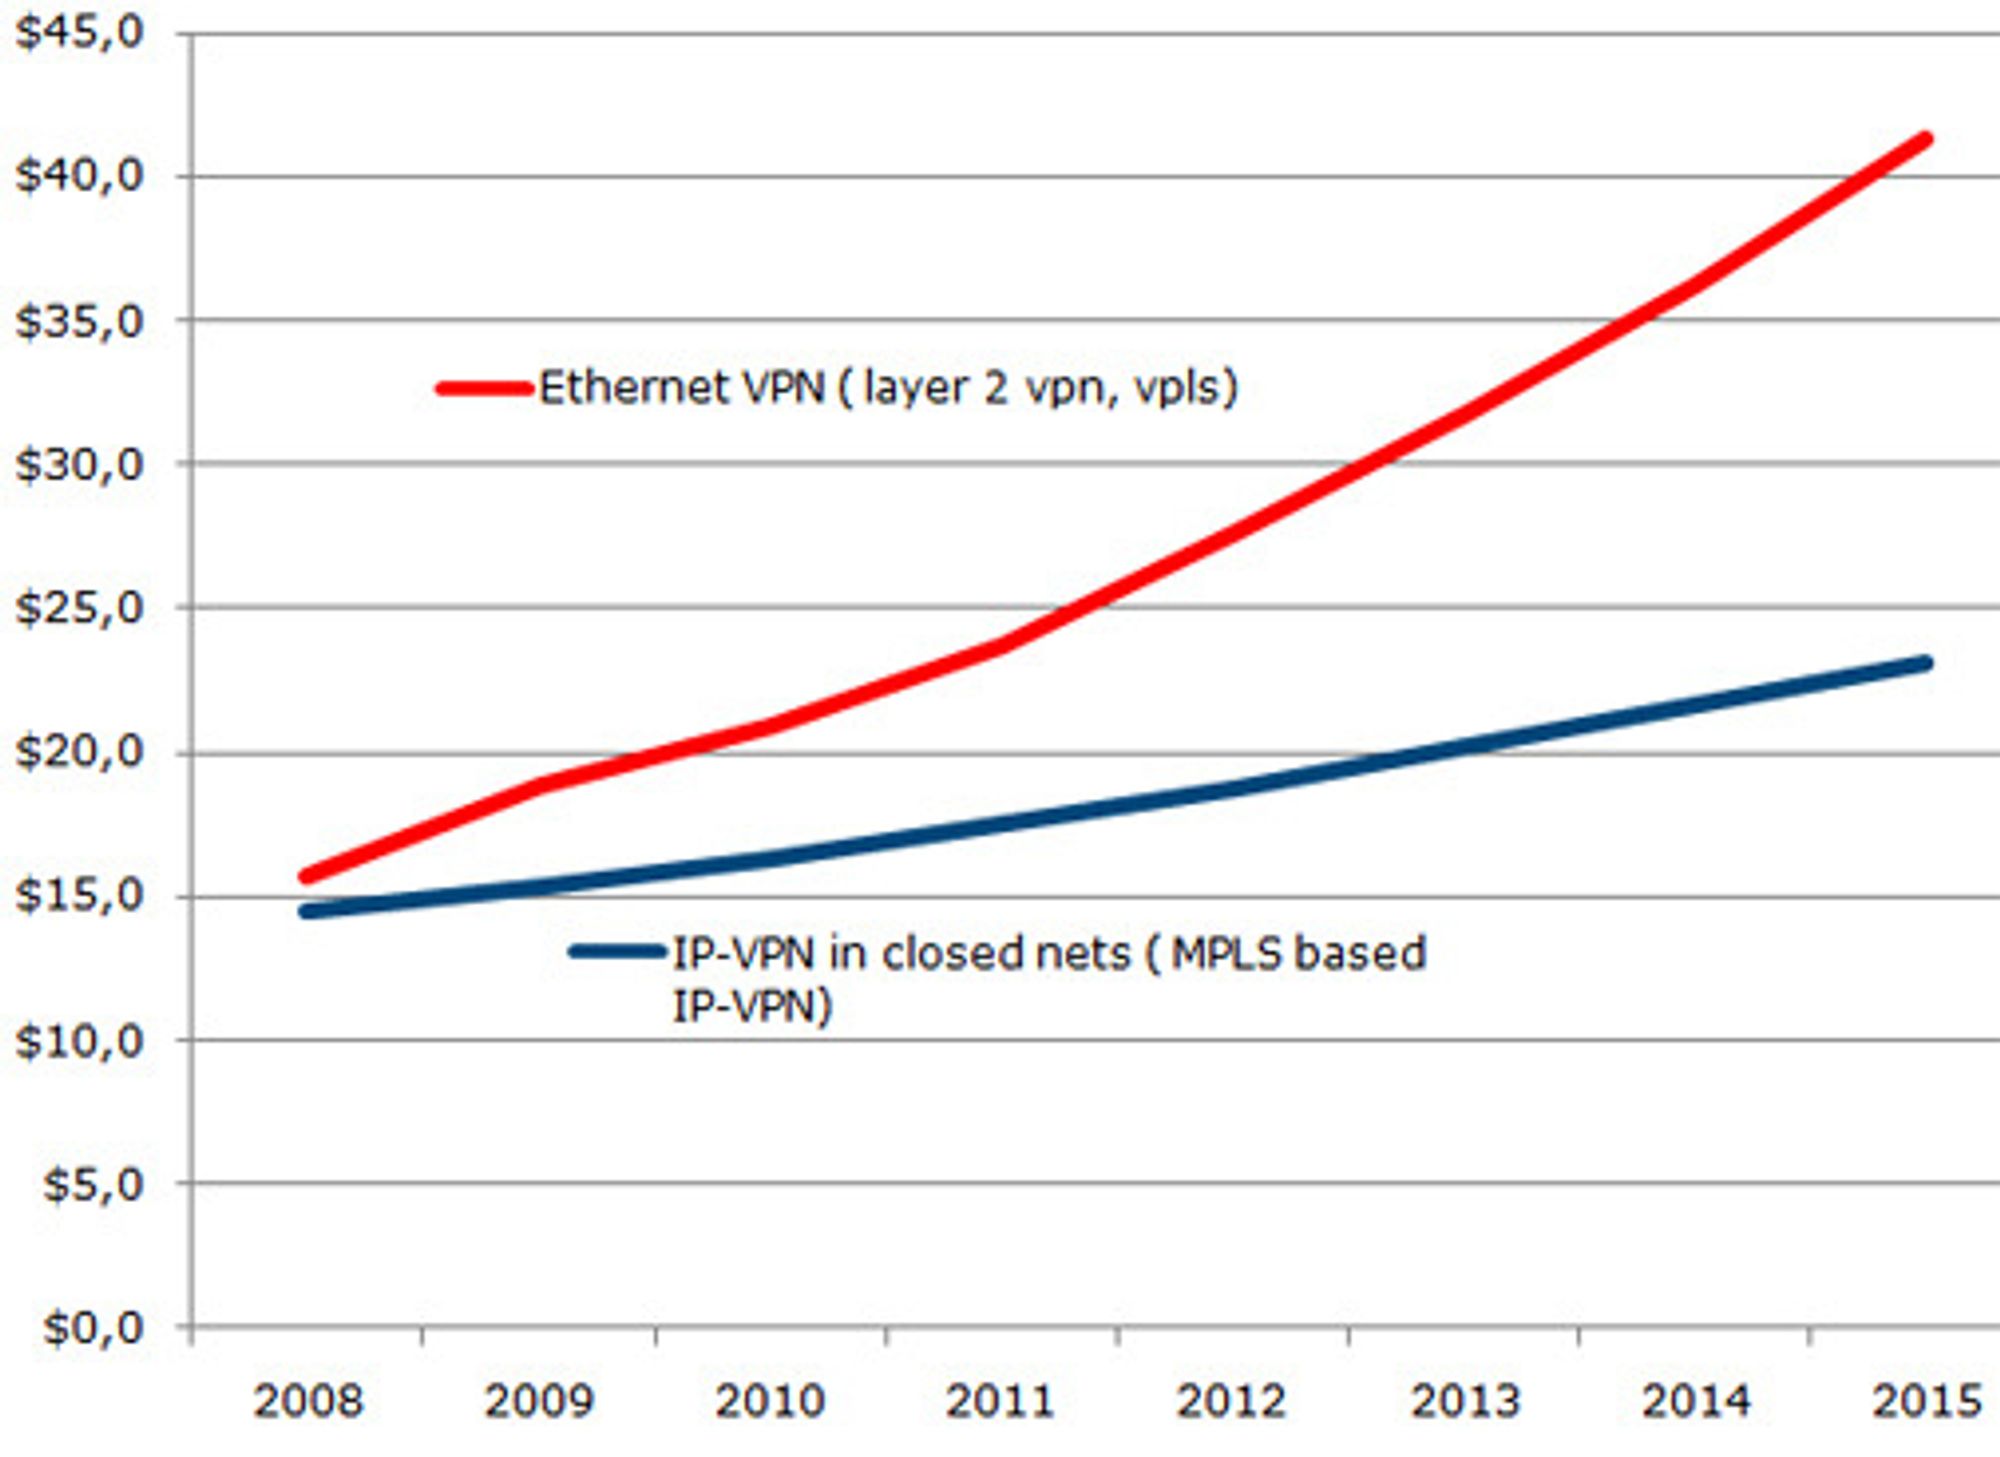 Omsetningen globalt av Ethernet VPN og IP-VPN globalt, i milliarder dollar.Ethernet VPN er for lengst større enn Ip-VPN, og avstanden ventes å øke.